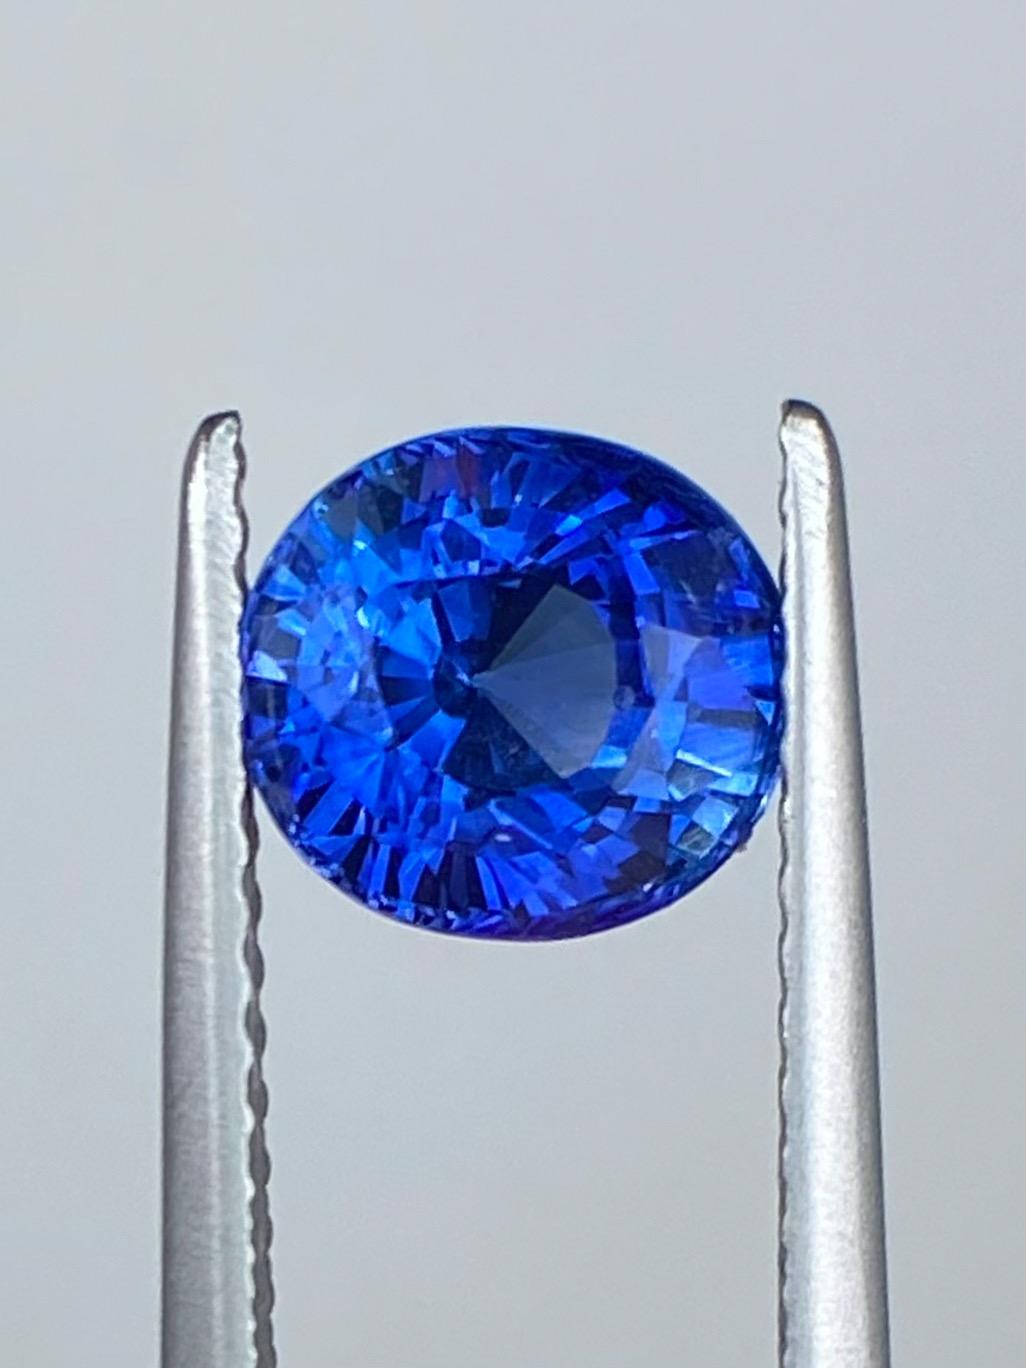 Le marchand de saphirs est fier de présenter ce saphir bleu vif naturel de 1,85ct. Elegamment facetté dans une forme ovale élégante, ce joyau époustouflant affiche un grade de couleur Munsell de 5PB 4T 14S (considéré comme le grade de couleur le